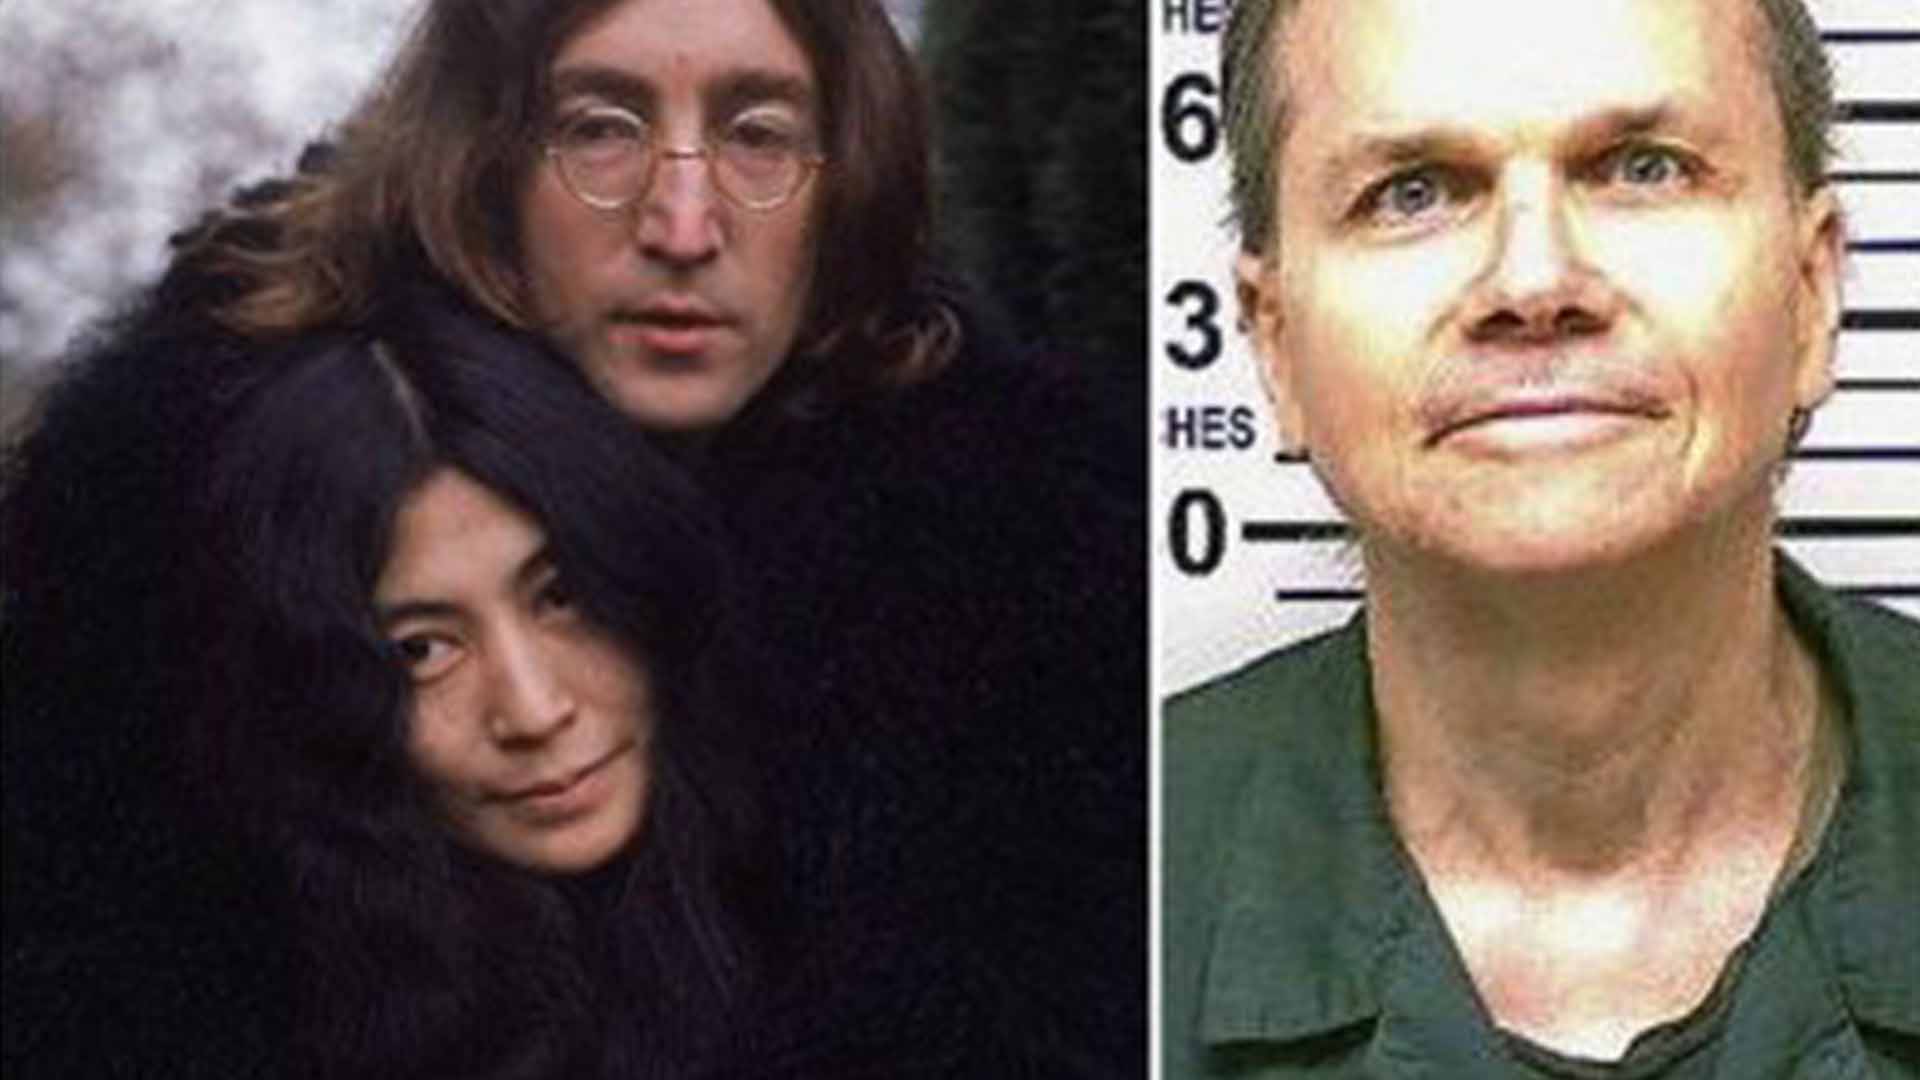 John Lennon’s killer denied parole for an 11th time